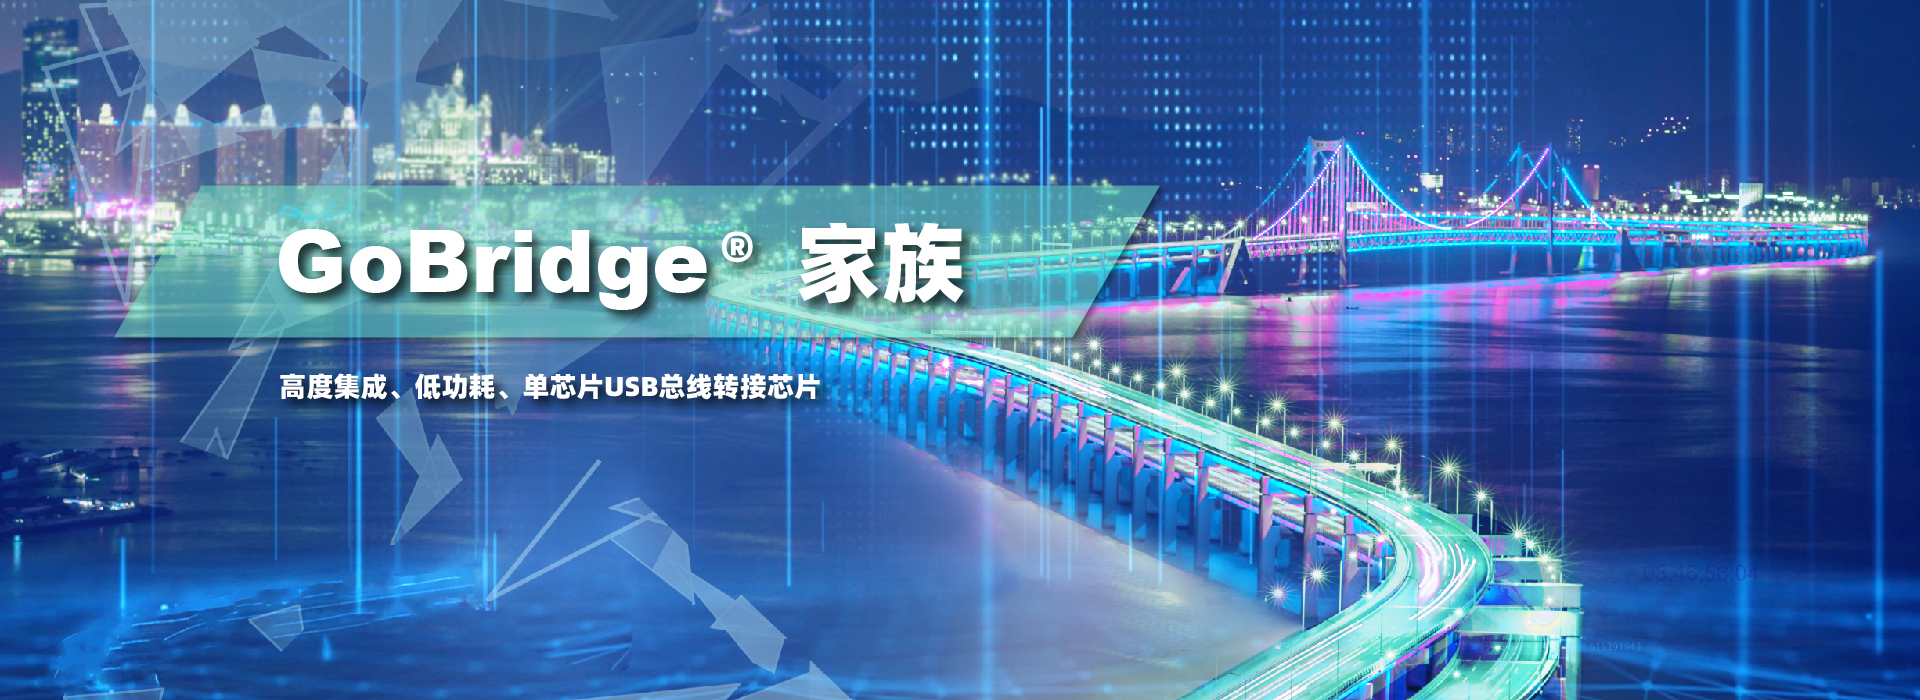 2138cn太阳集团发布 USB 外设桥接 GoBridge ASSP 产品线